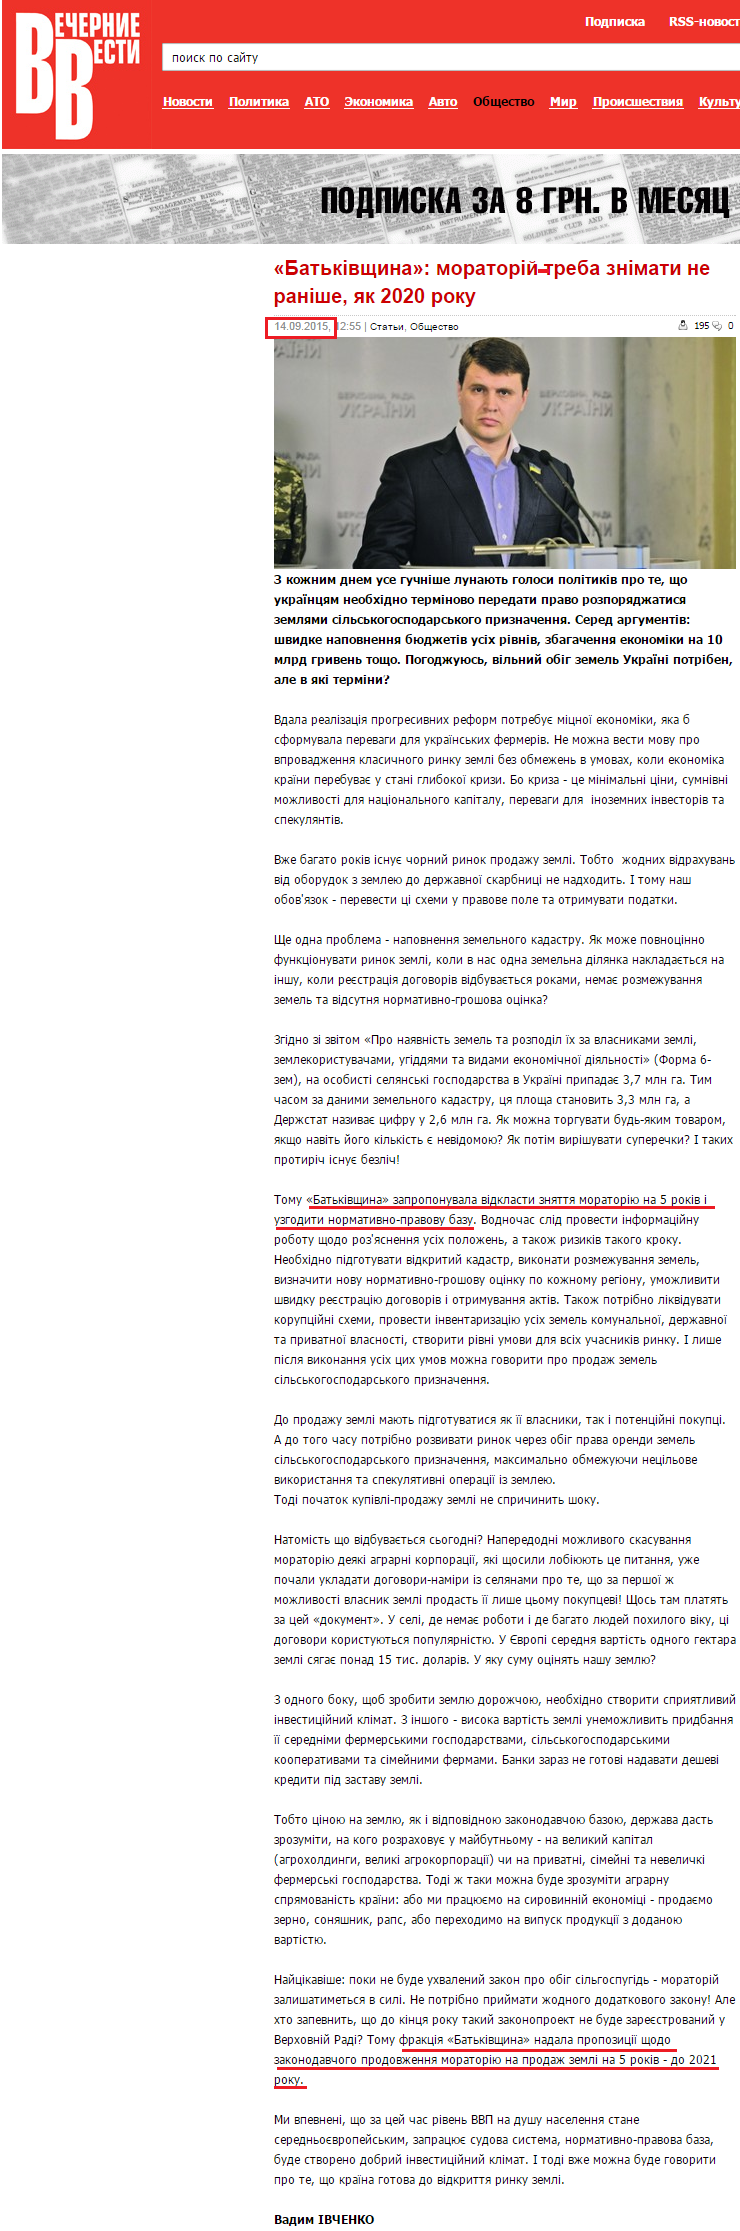 http://gazetavv.com/news/ukraine/1442219954--batkivshchina-moratoriy-treba-znimati-ne-ranishe-yak-2020.html